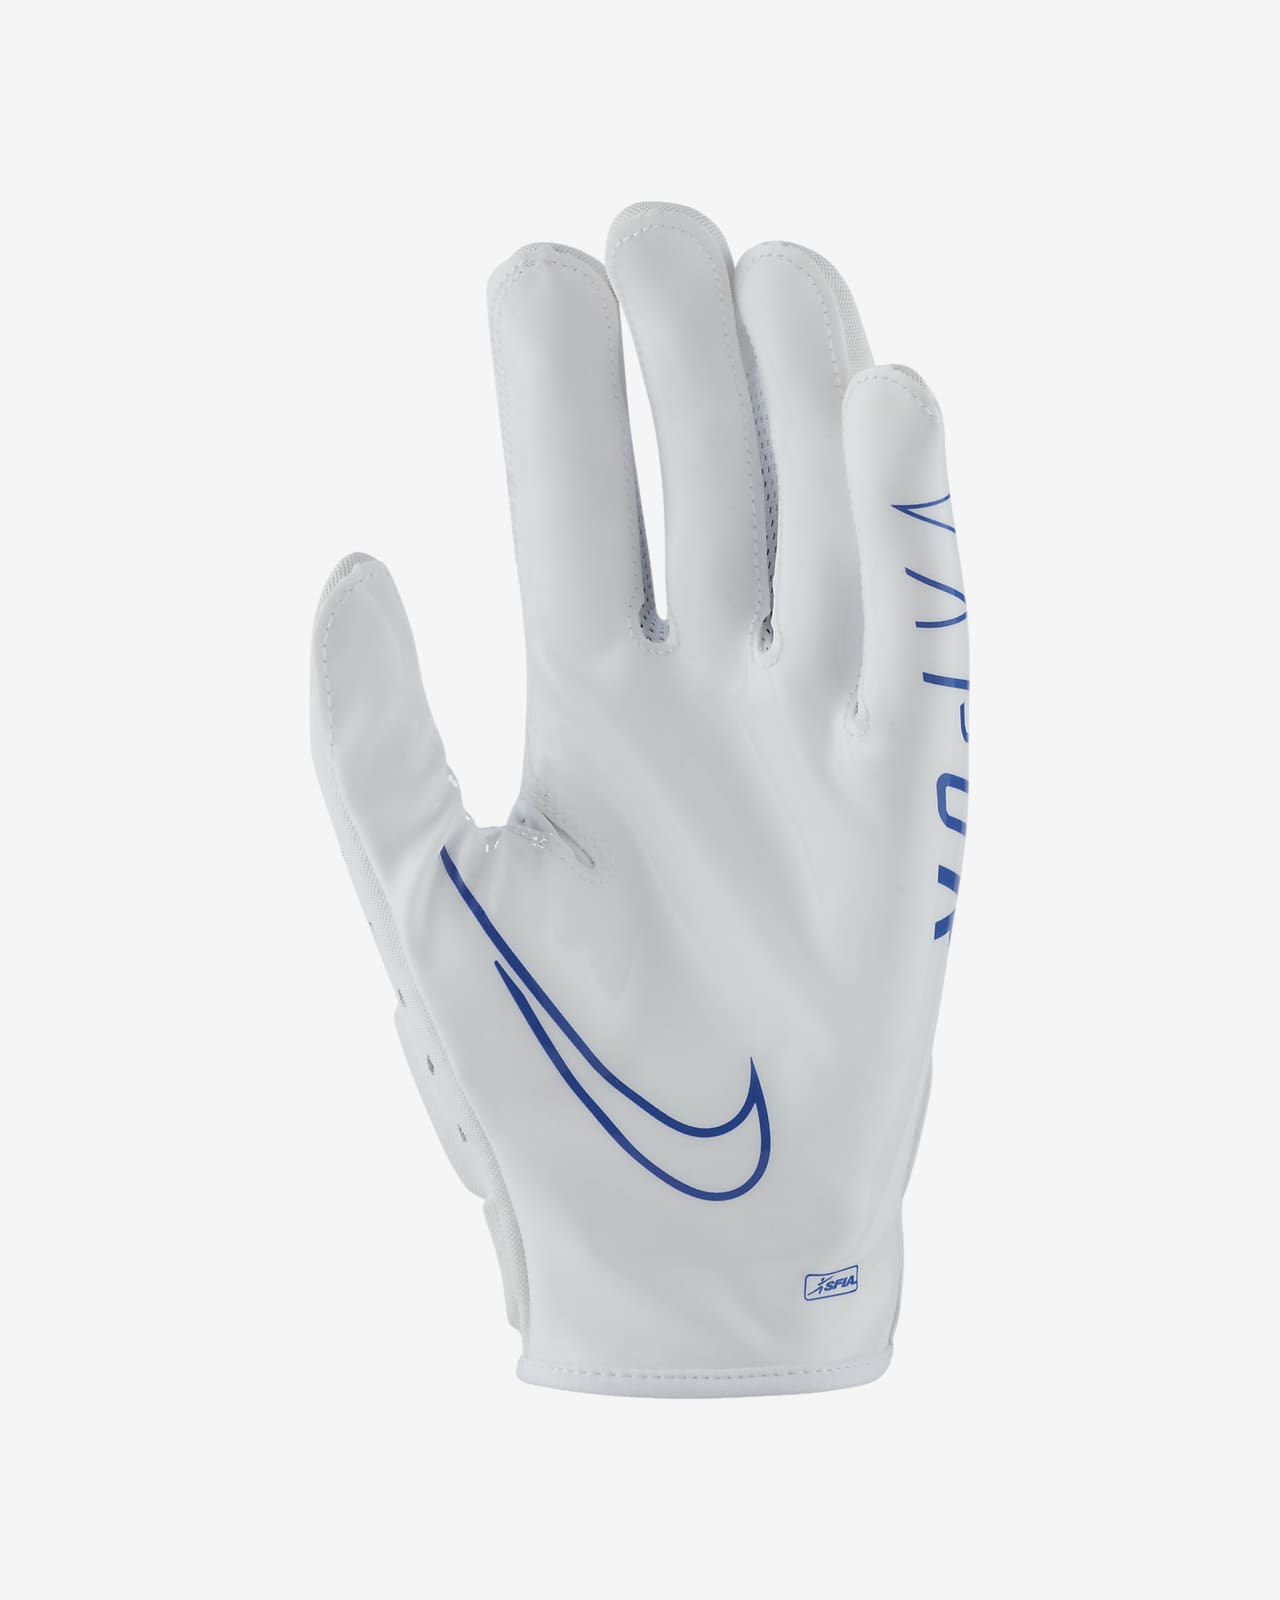 Nike Vapor Jet 6.0 Football Gloves